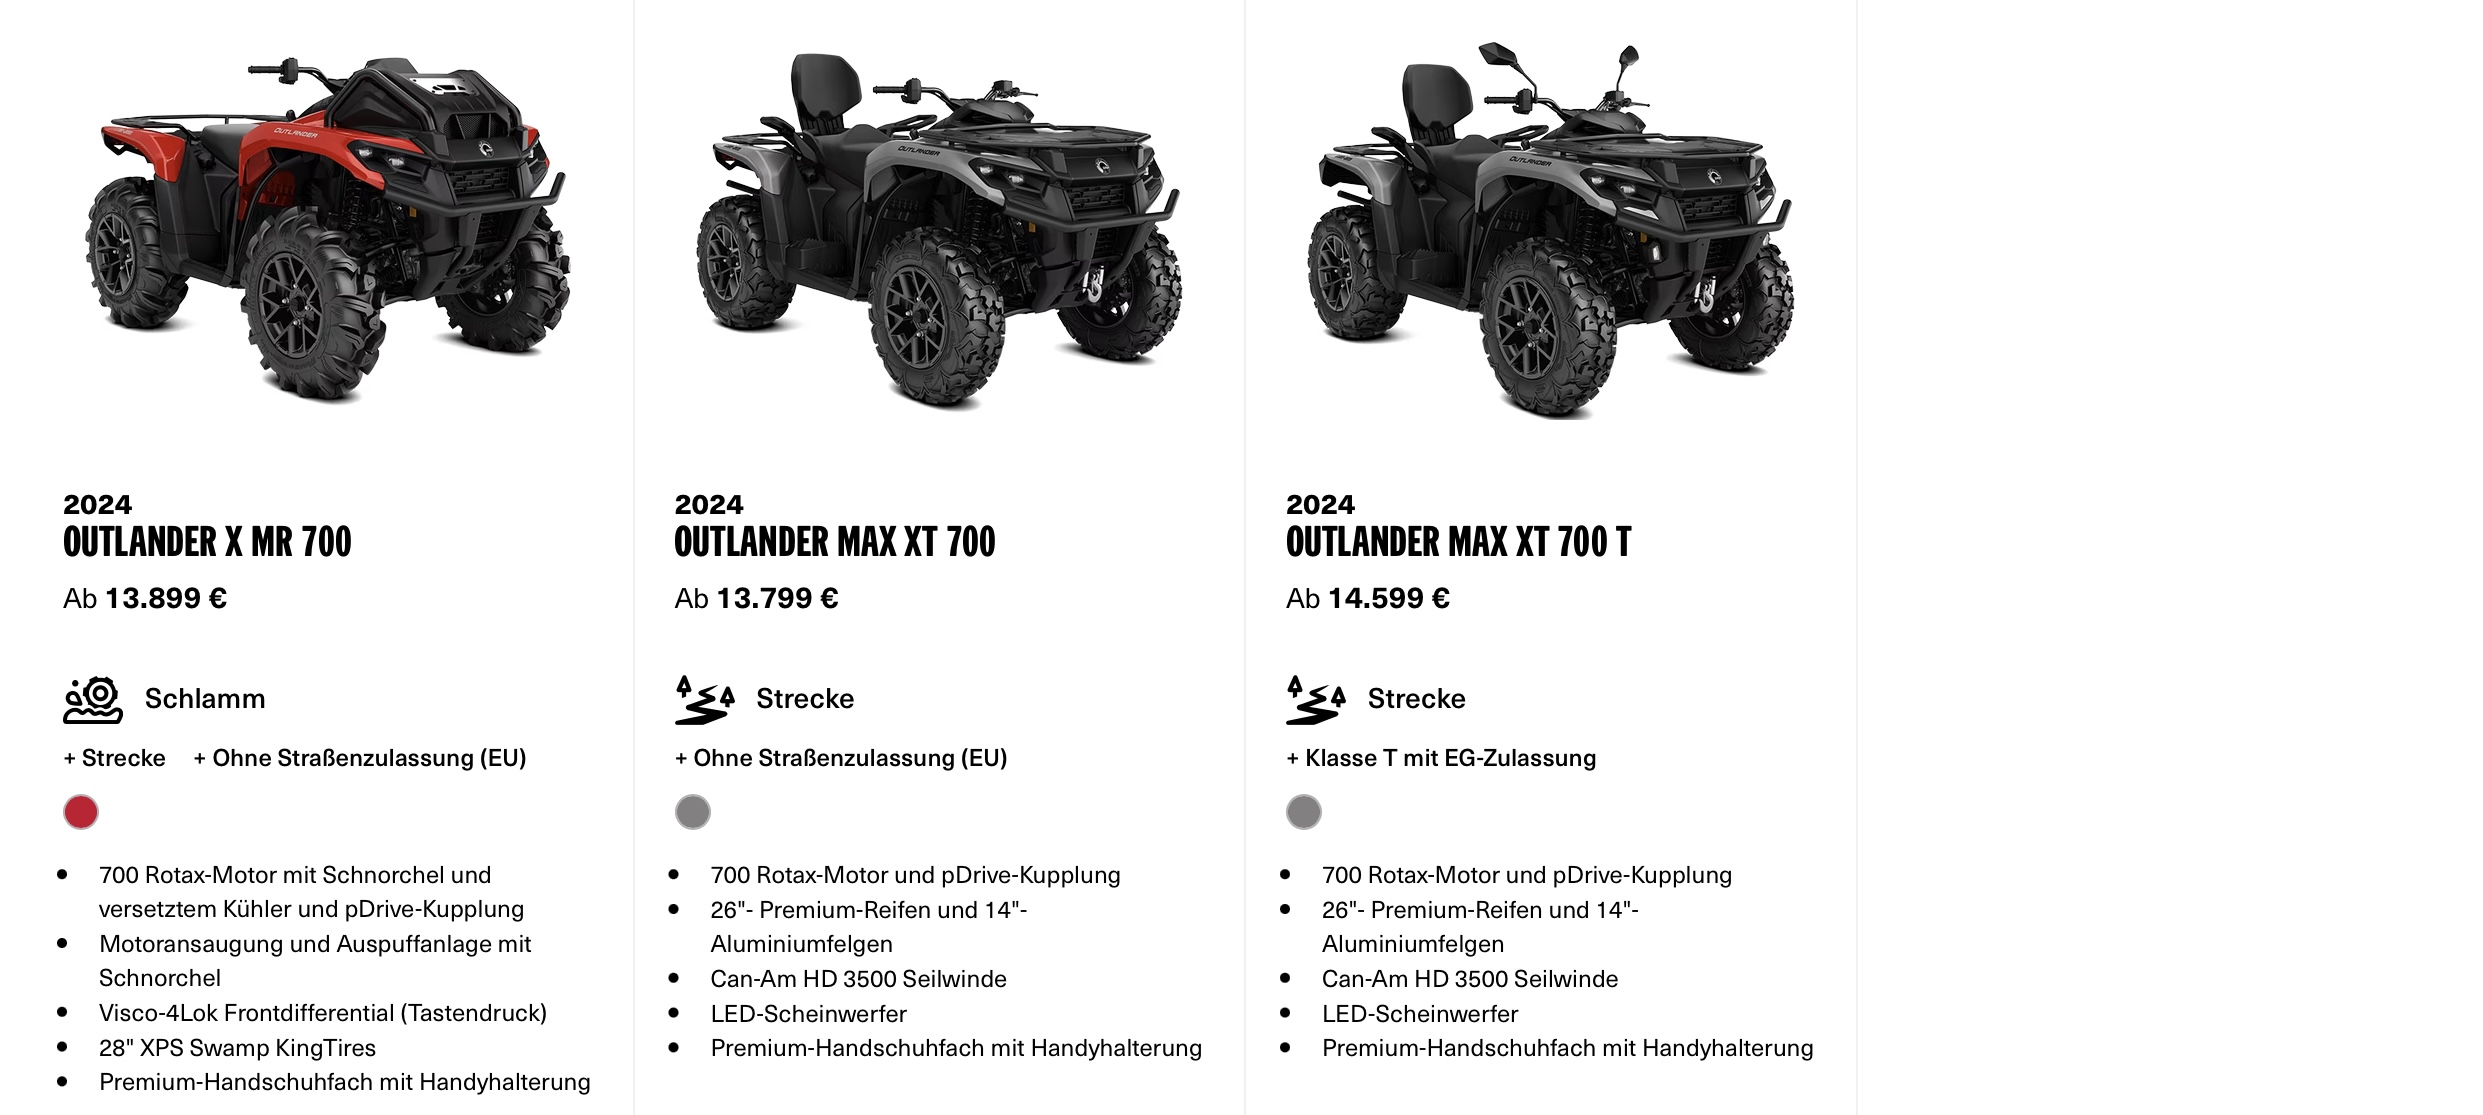 Angebot Canam ATV 2024 Outlander Max XT 700 XMR 700 Bei Vertragshändler Weinand Kolker Ochtendung